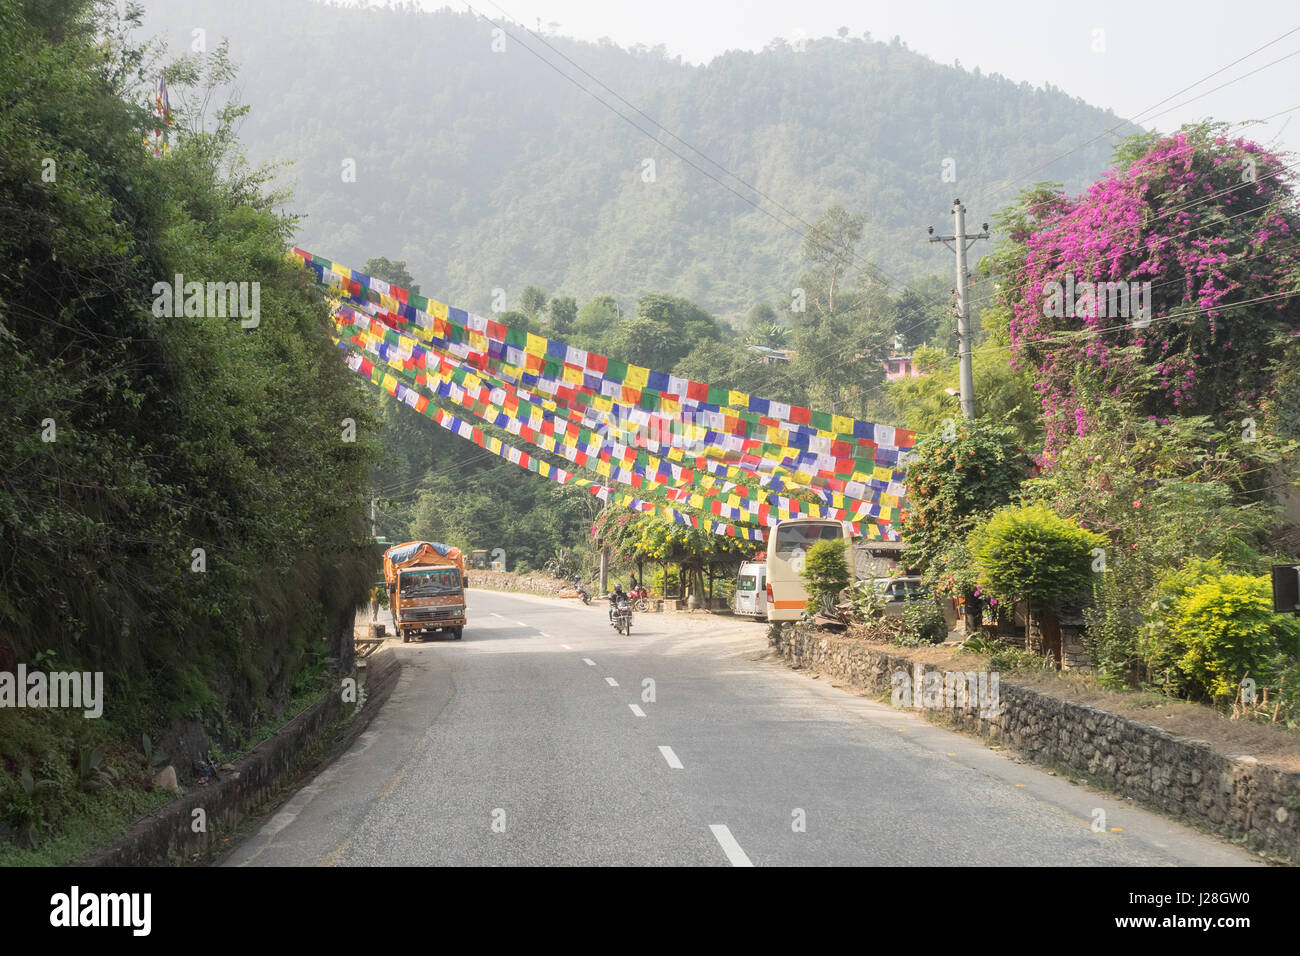 Nepal, Zentralregion, Benighat, Annapurna Circuit - fahren Kathmandu nach Bhulbhule - Gebet Fahnen das Land Straße westlich von Kathmandu schmücken Stockfoto